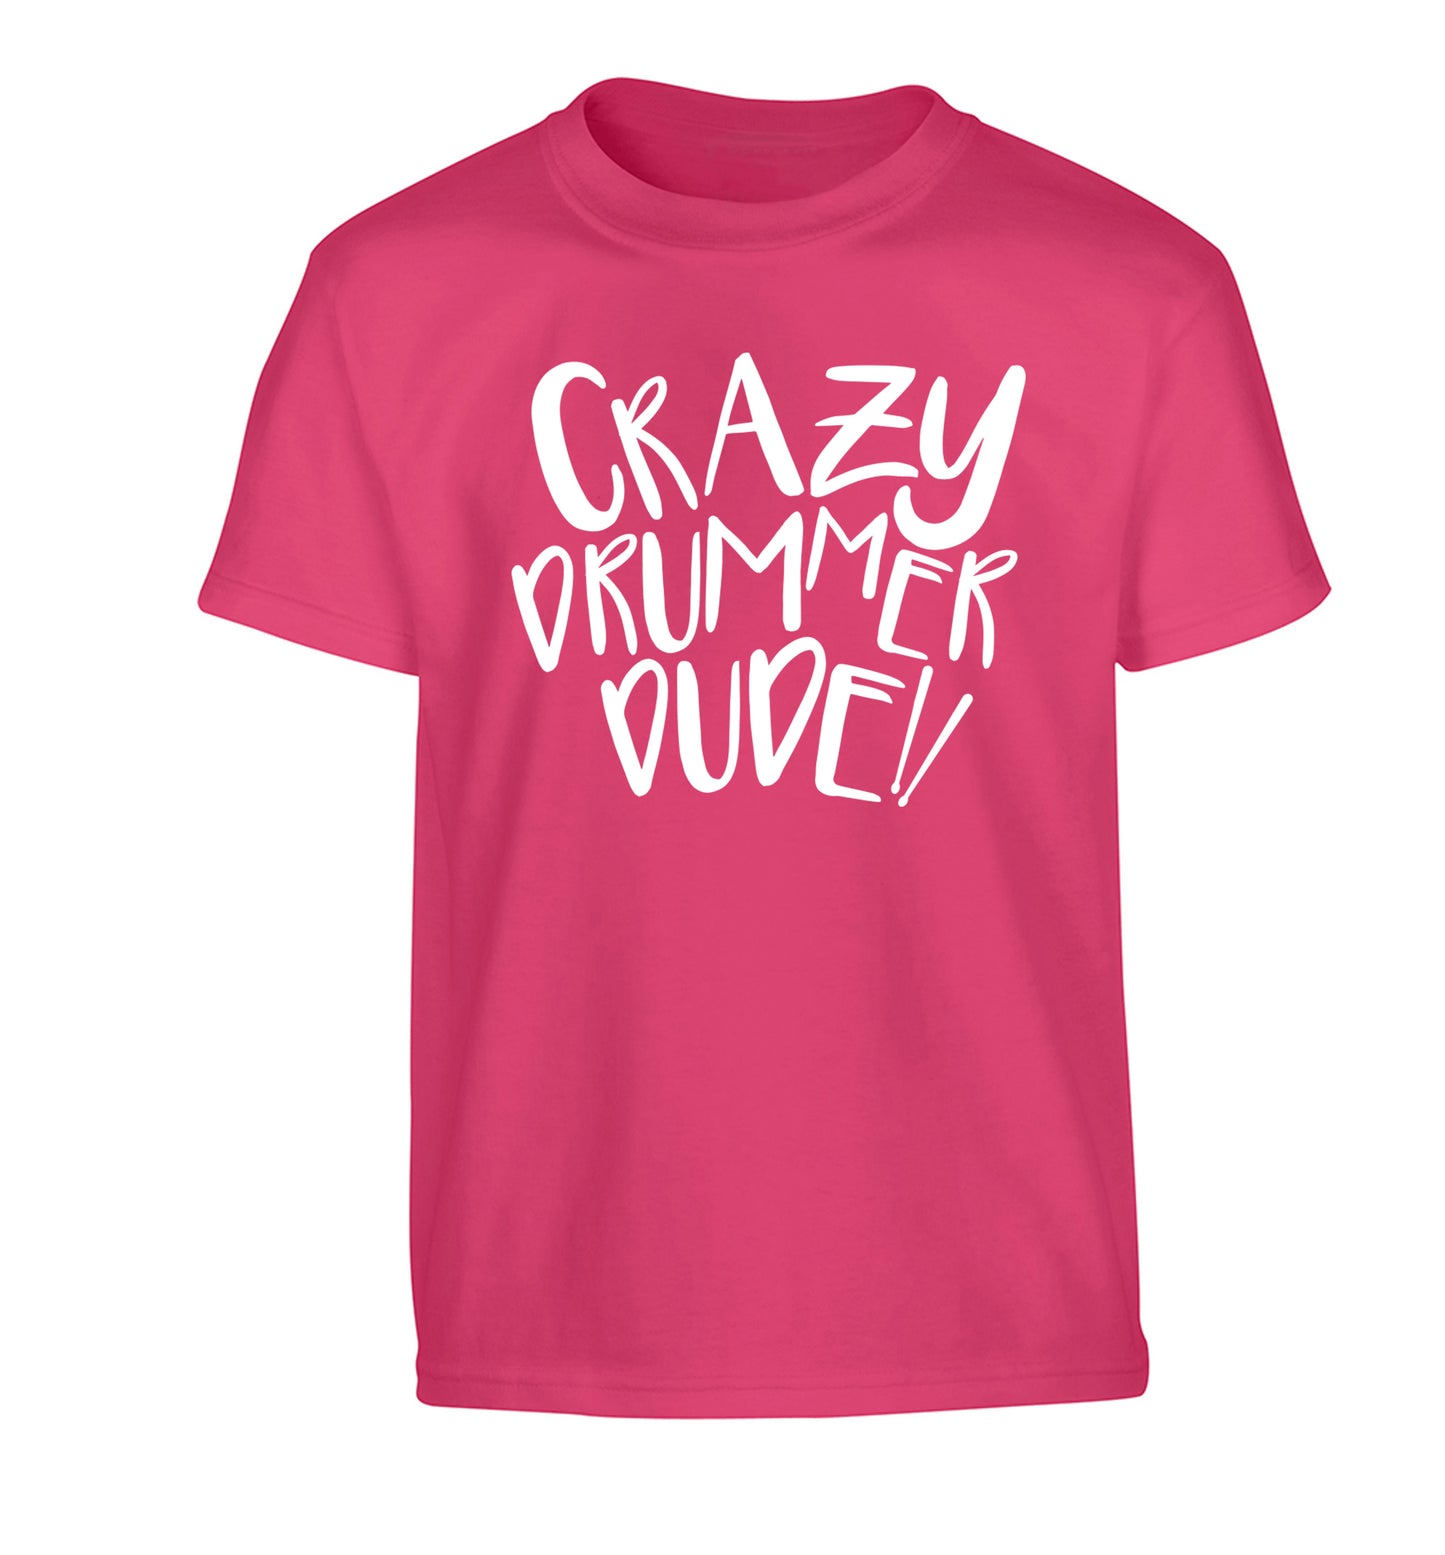 Crazy drummer dude Children's pink Tshirt 12-14 Years